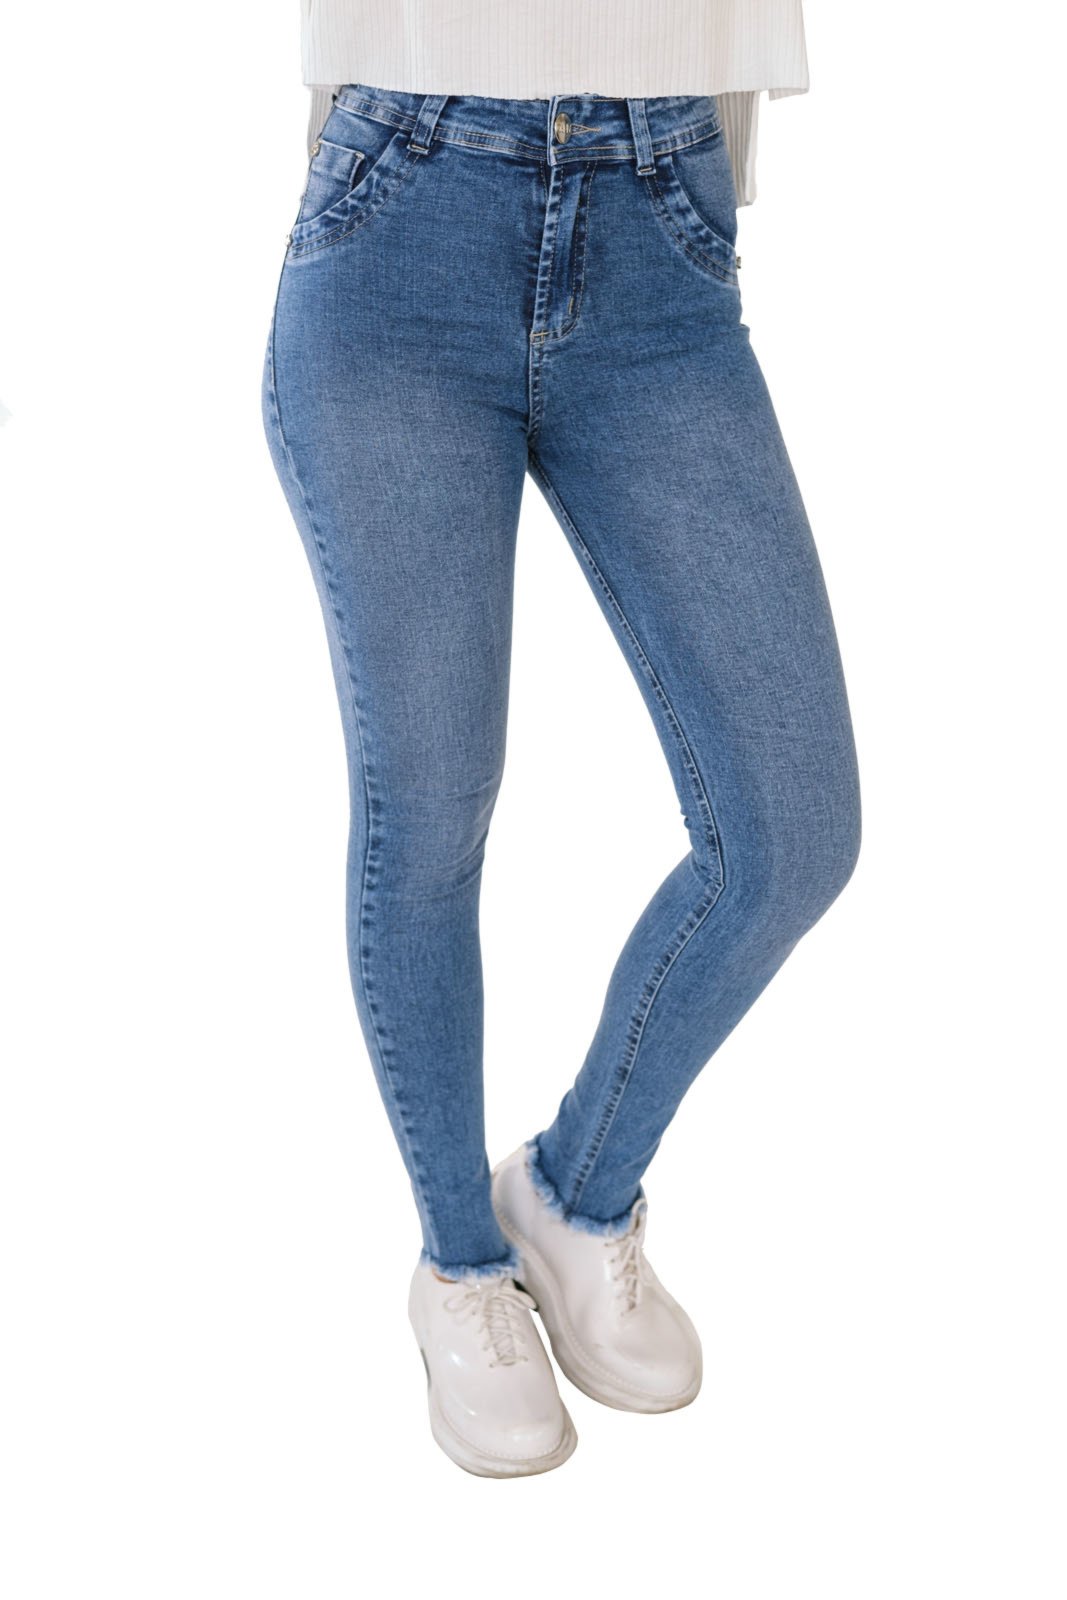 calça jeans com barra assimétrica